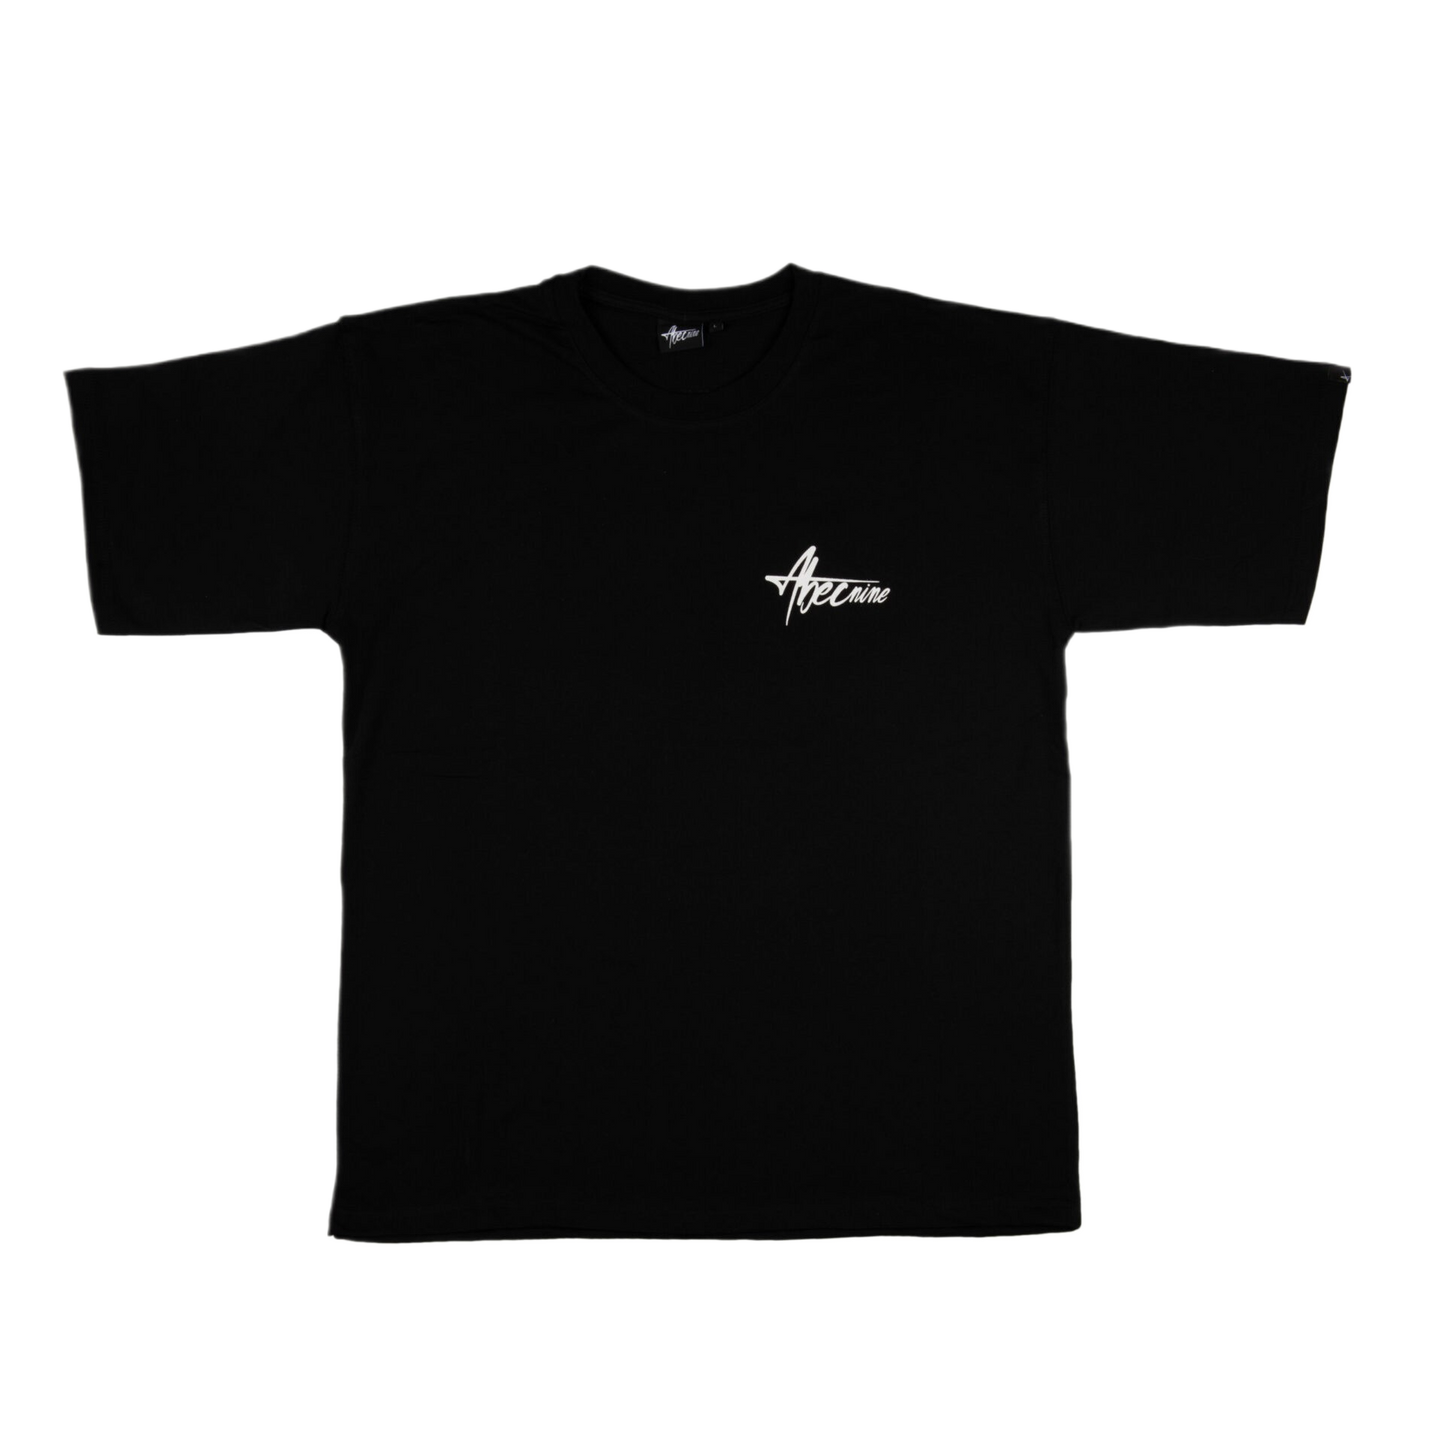 T-Shirt Abecnine Black Hang loose